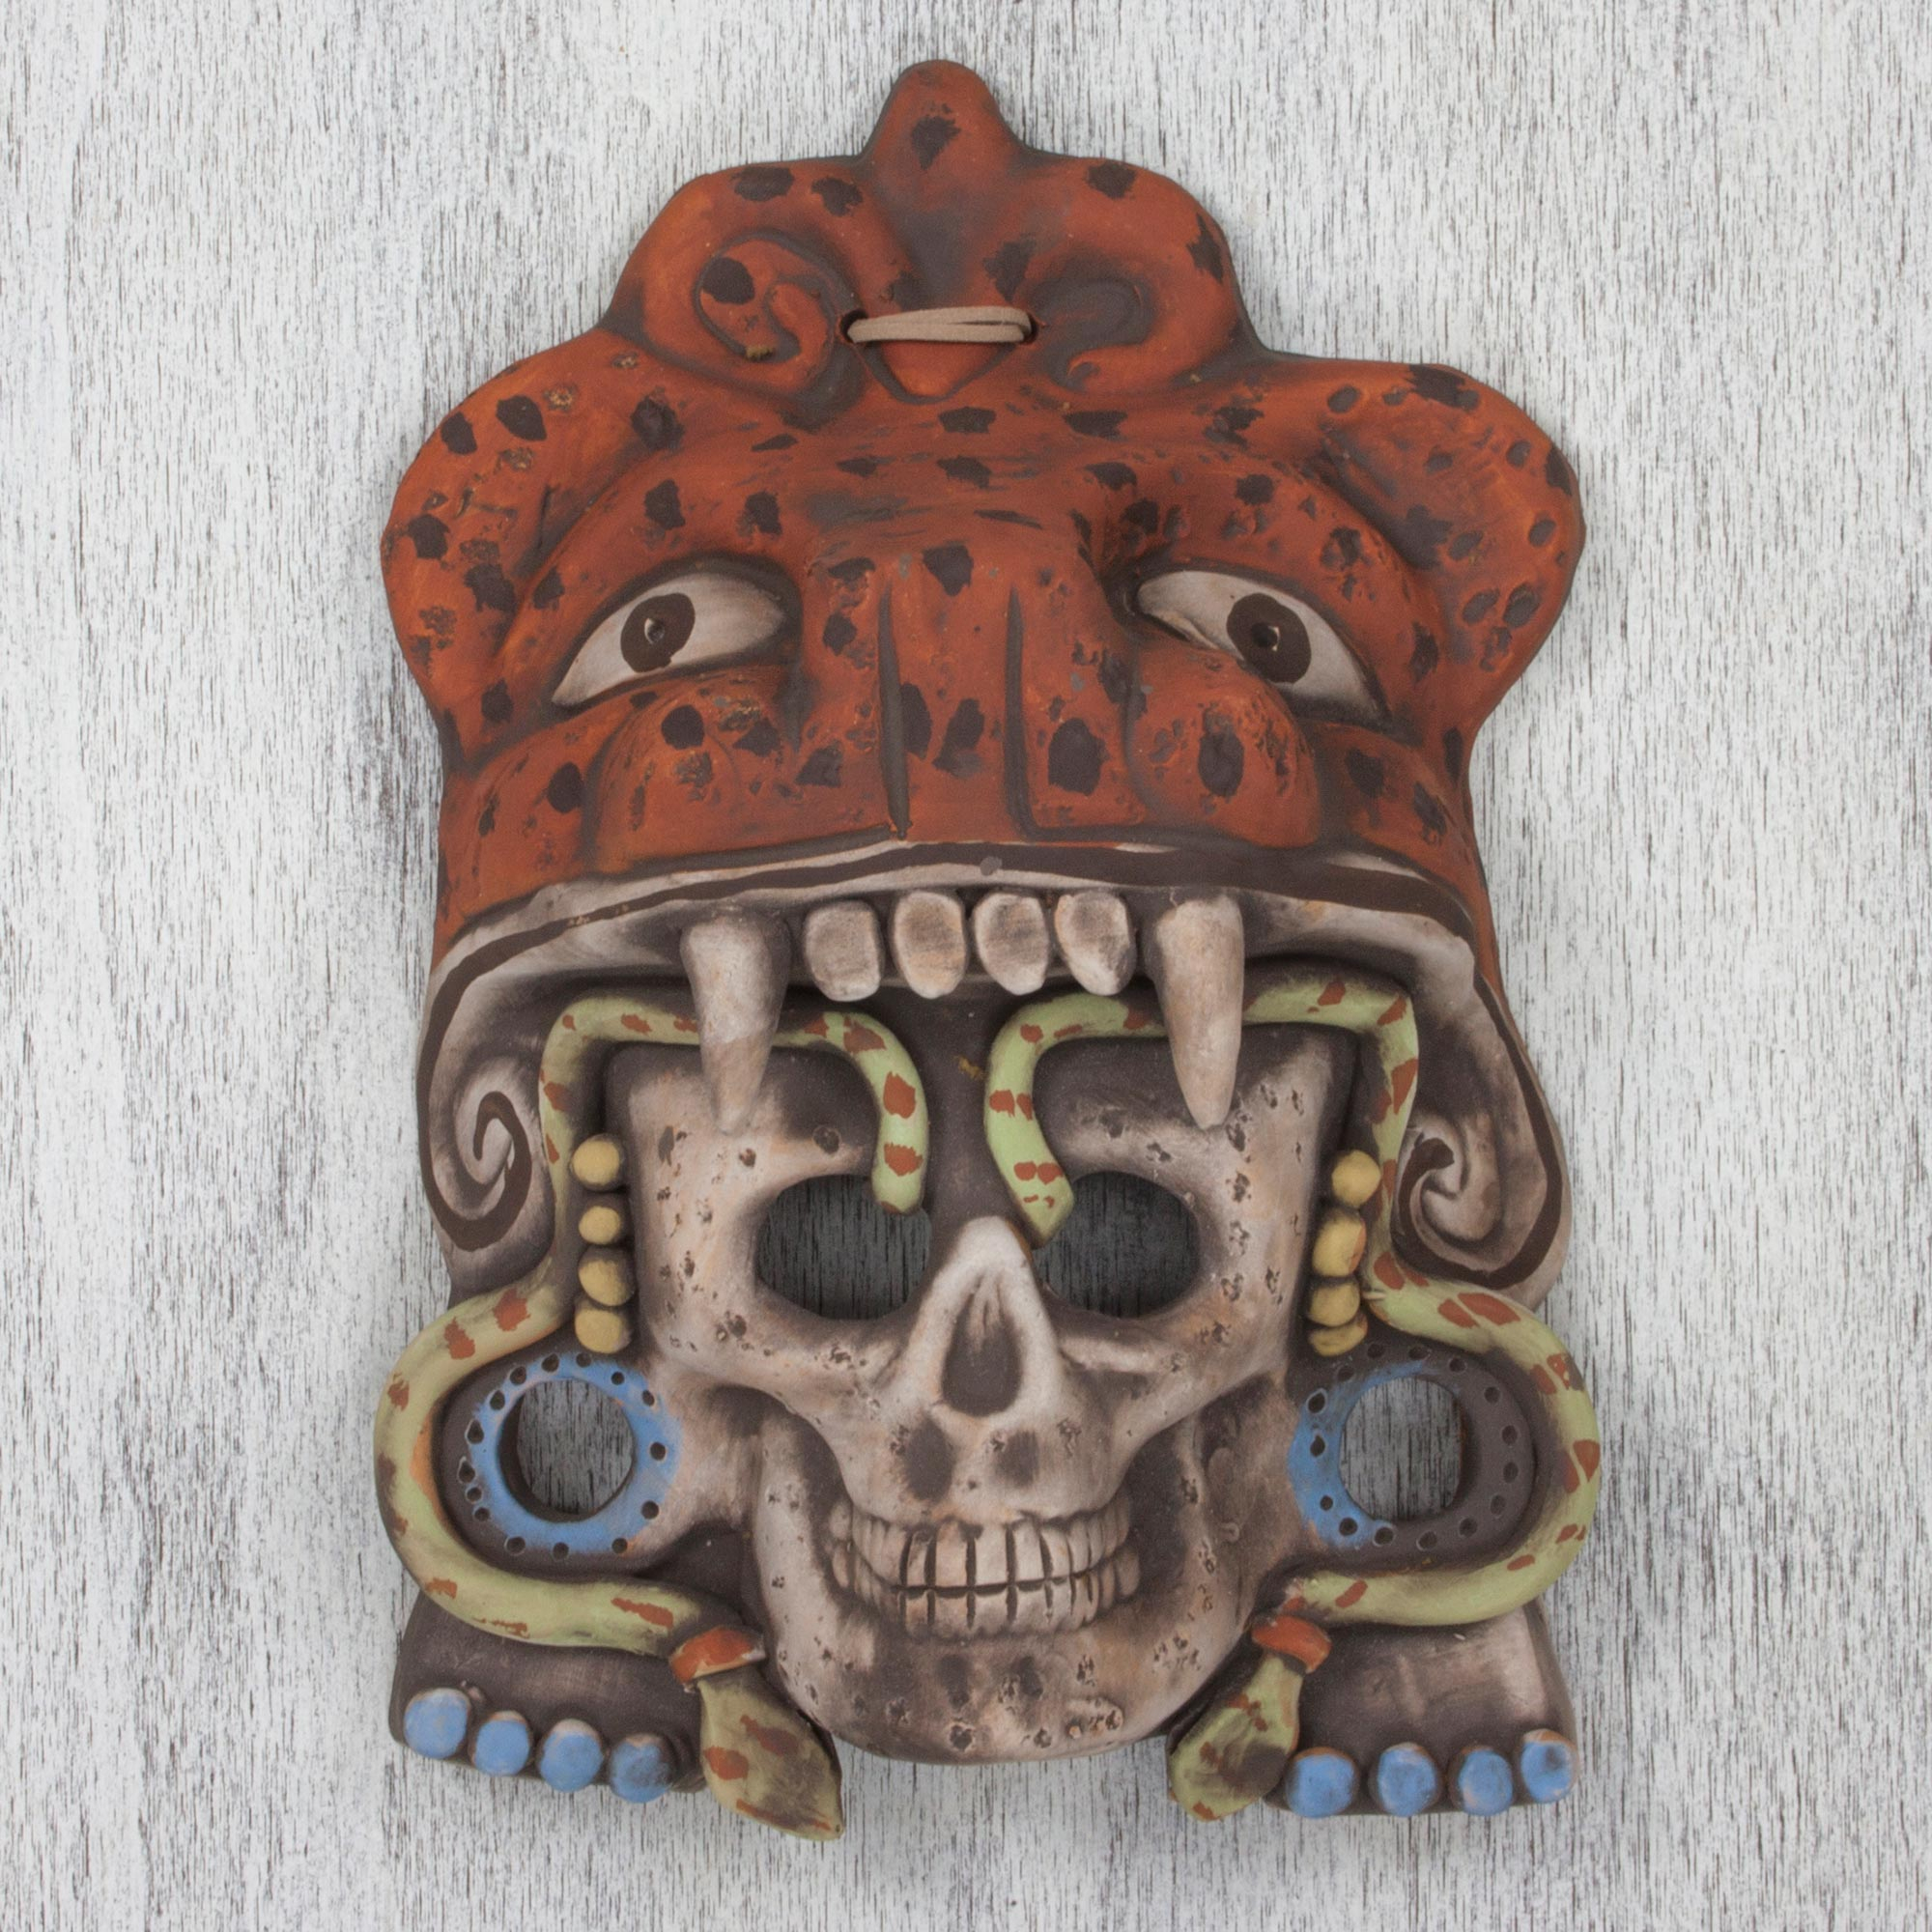 aztec warrior skull meaning